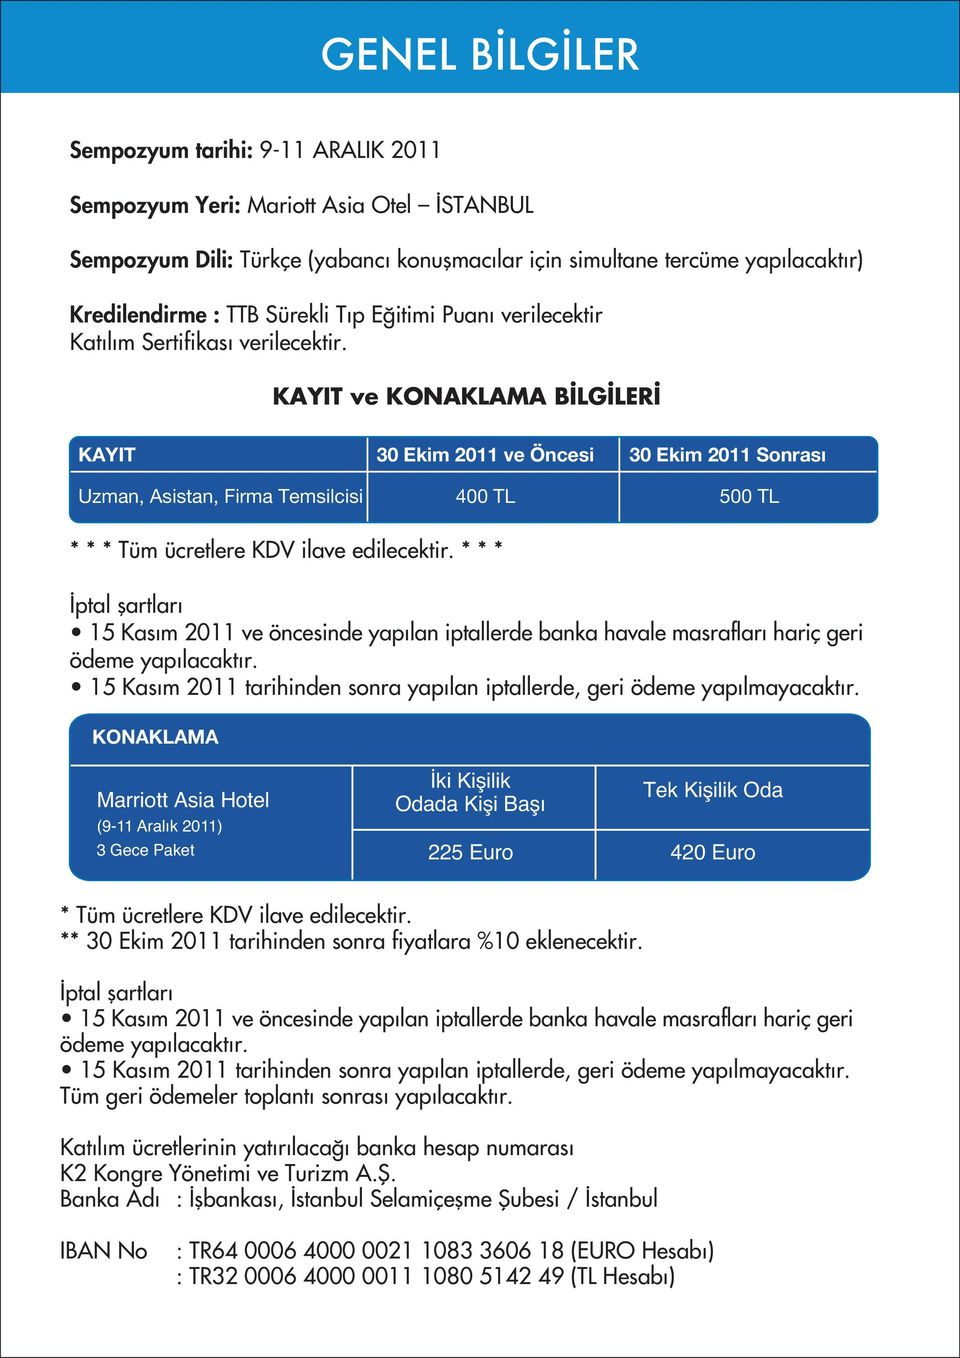 KAYIT ve KONAKLAMA B LG LER KAYIT 30 Ekim 2011 ve Öncesi 30 Ekim 2011 Sonrası Uzman, Asistan, Firma Temsilcisi 400 TL 500 TL * * * Tüm ücretlere KDV ilave edilecektir.